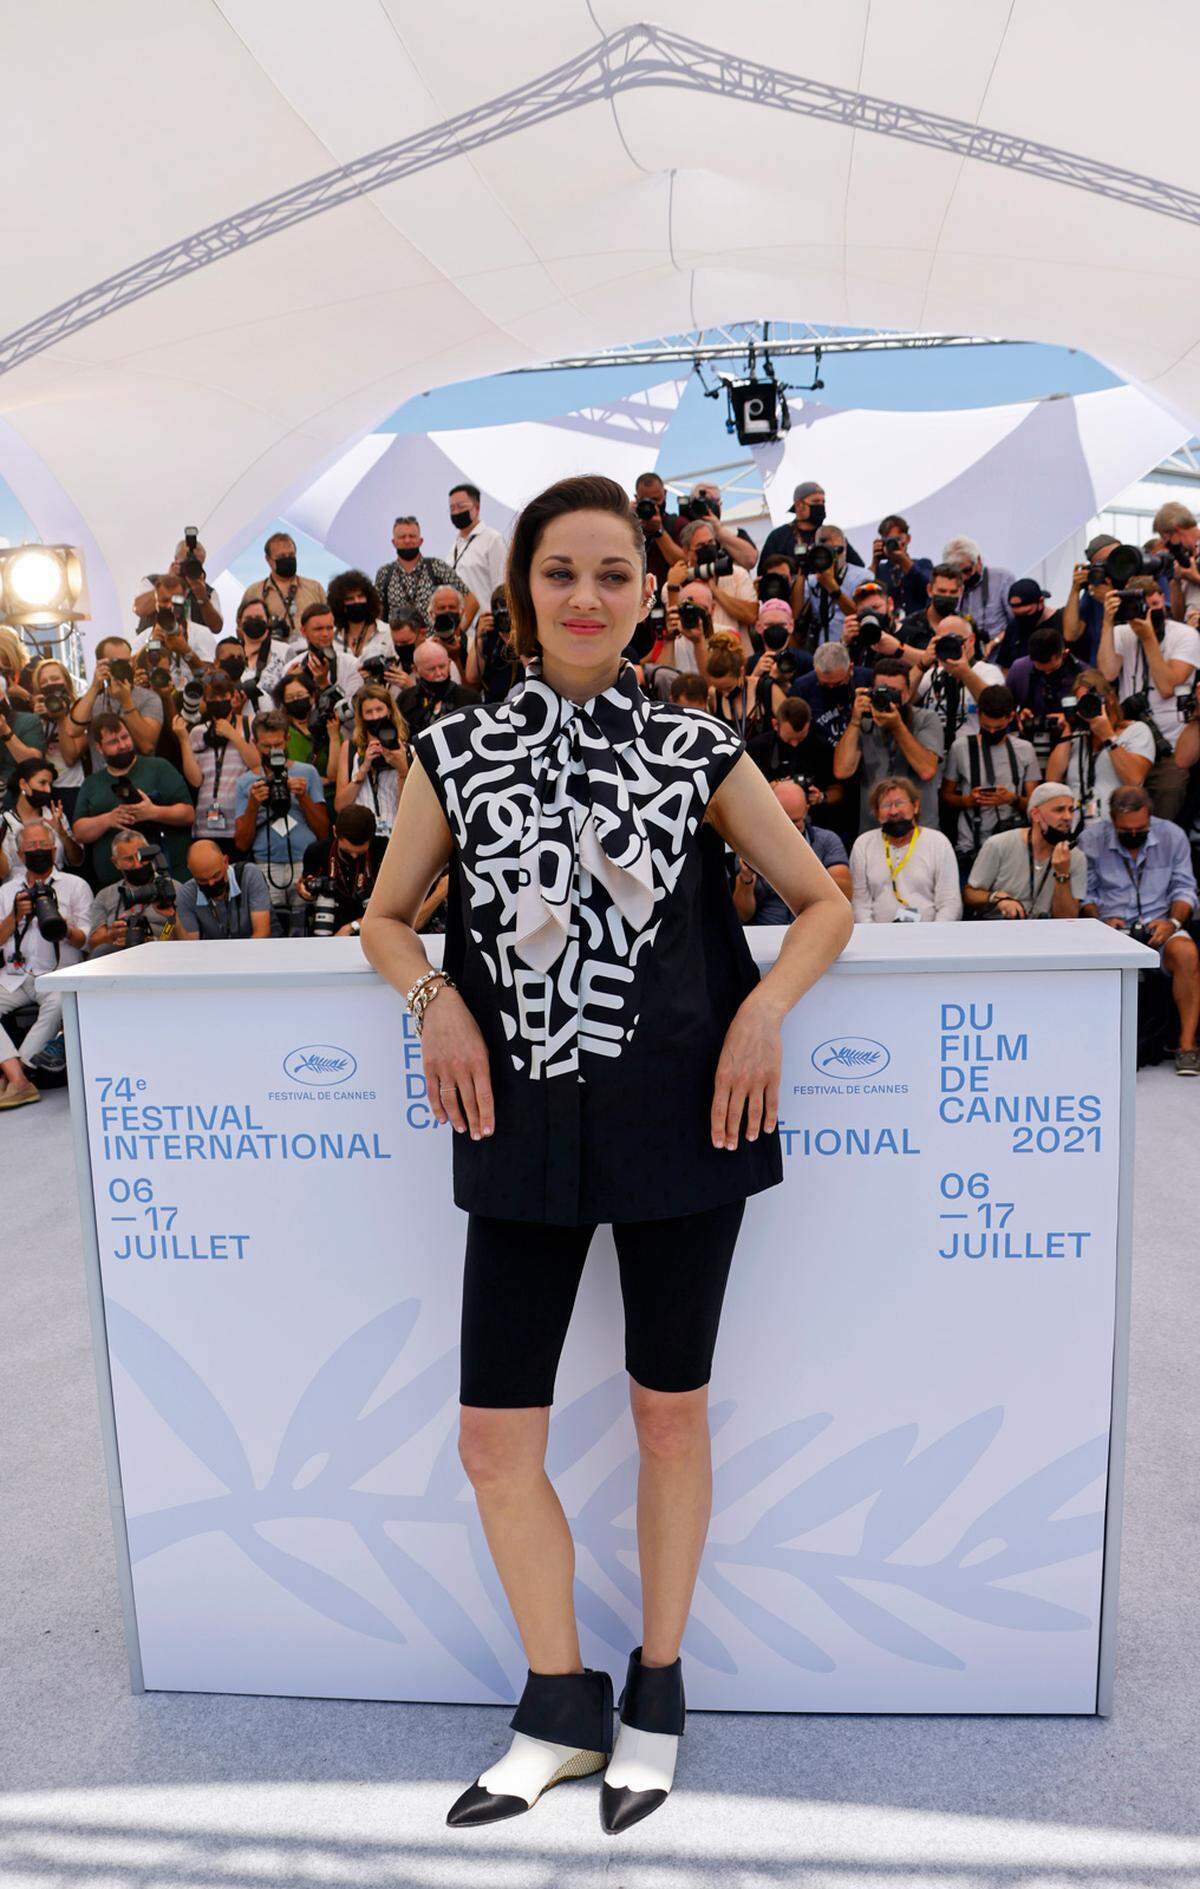 Wir wollen ja den Shitstorm gegen die Modemacherin Lena Hoschek nicht gleich wieder ausgraben, kaum dass es wieder ruhig geworden ist, aber dieses "Girl" ist wirklich "knackig" genug, um in Radlerhosen "witzig" auszusehen. Marion Cotillard hat ein Faible für ausgefallene Hosen-Looks. Heuer verpasste sie ihrem ersten Auftritt am Film Festival von Cannes einen sportlichen Touch.   